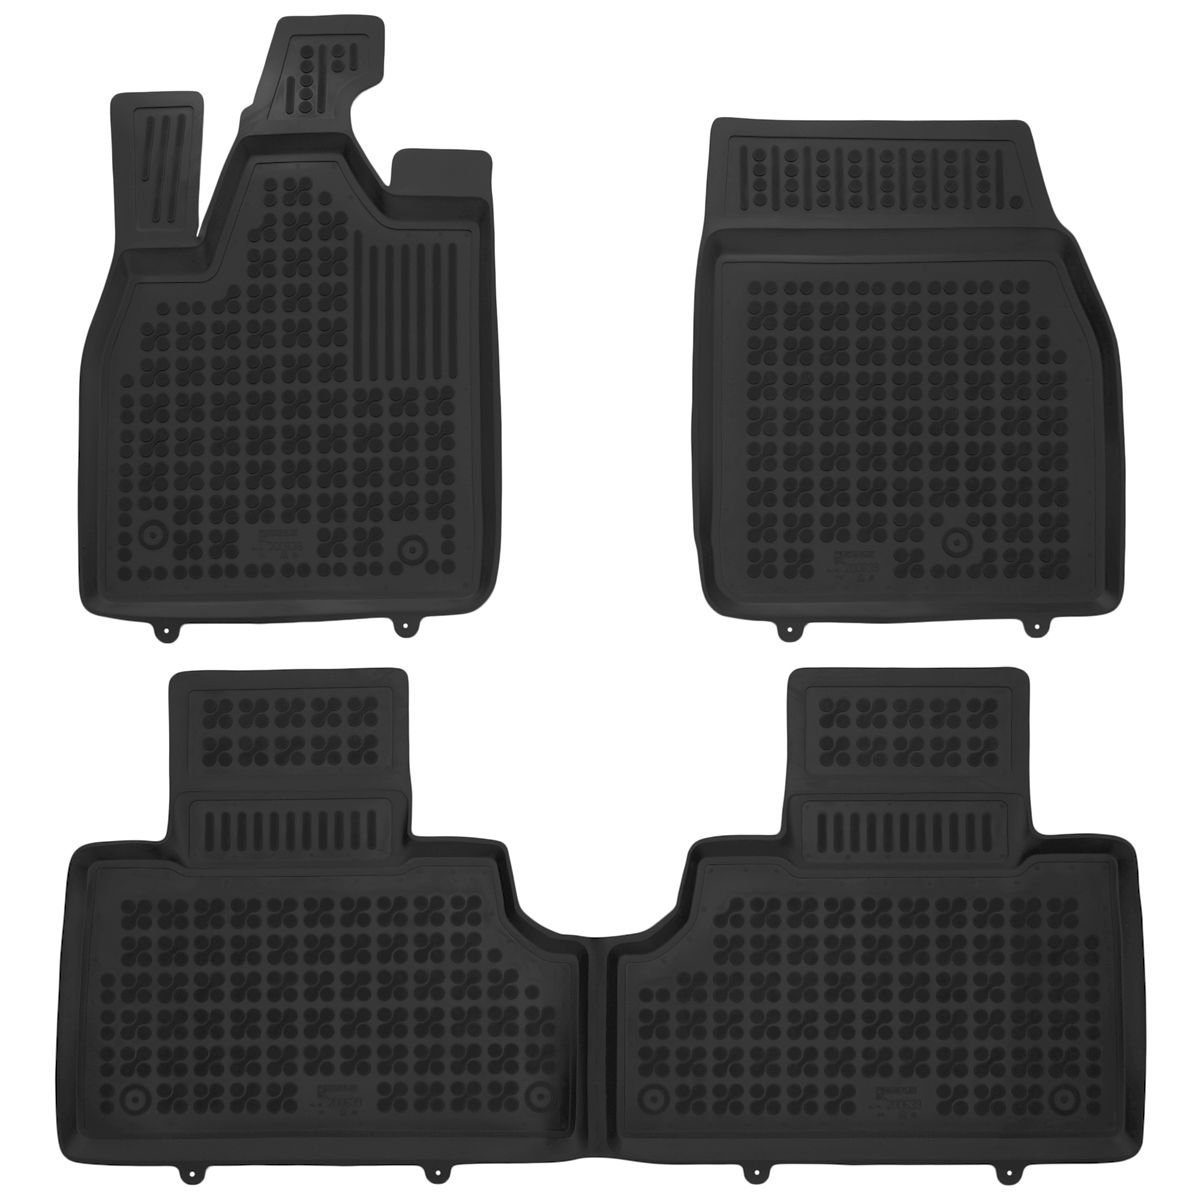 AZUGA Auto-Fußmatten Hohe Gummi-Fußmatten für passend Mach-E Mustang 2021 3-tlg., Mustang Ford Mach-E SUV Ford ab für